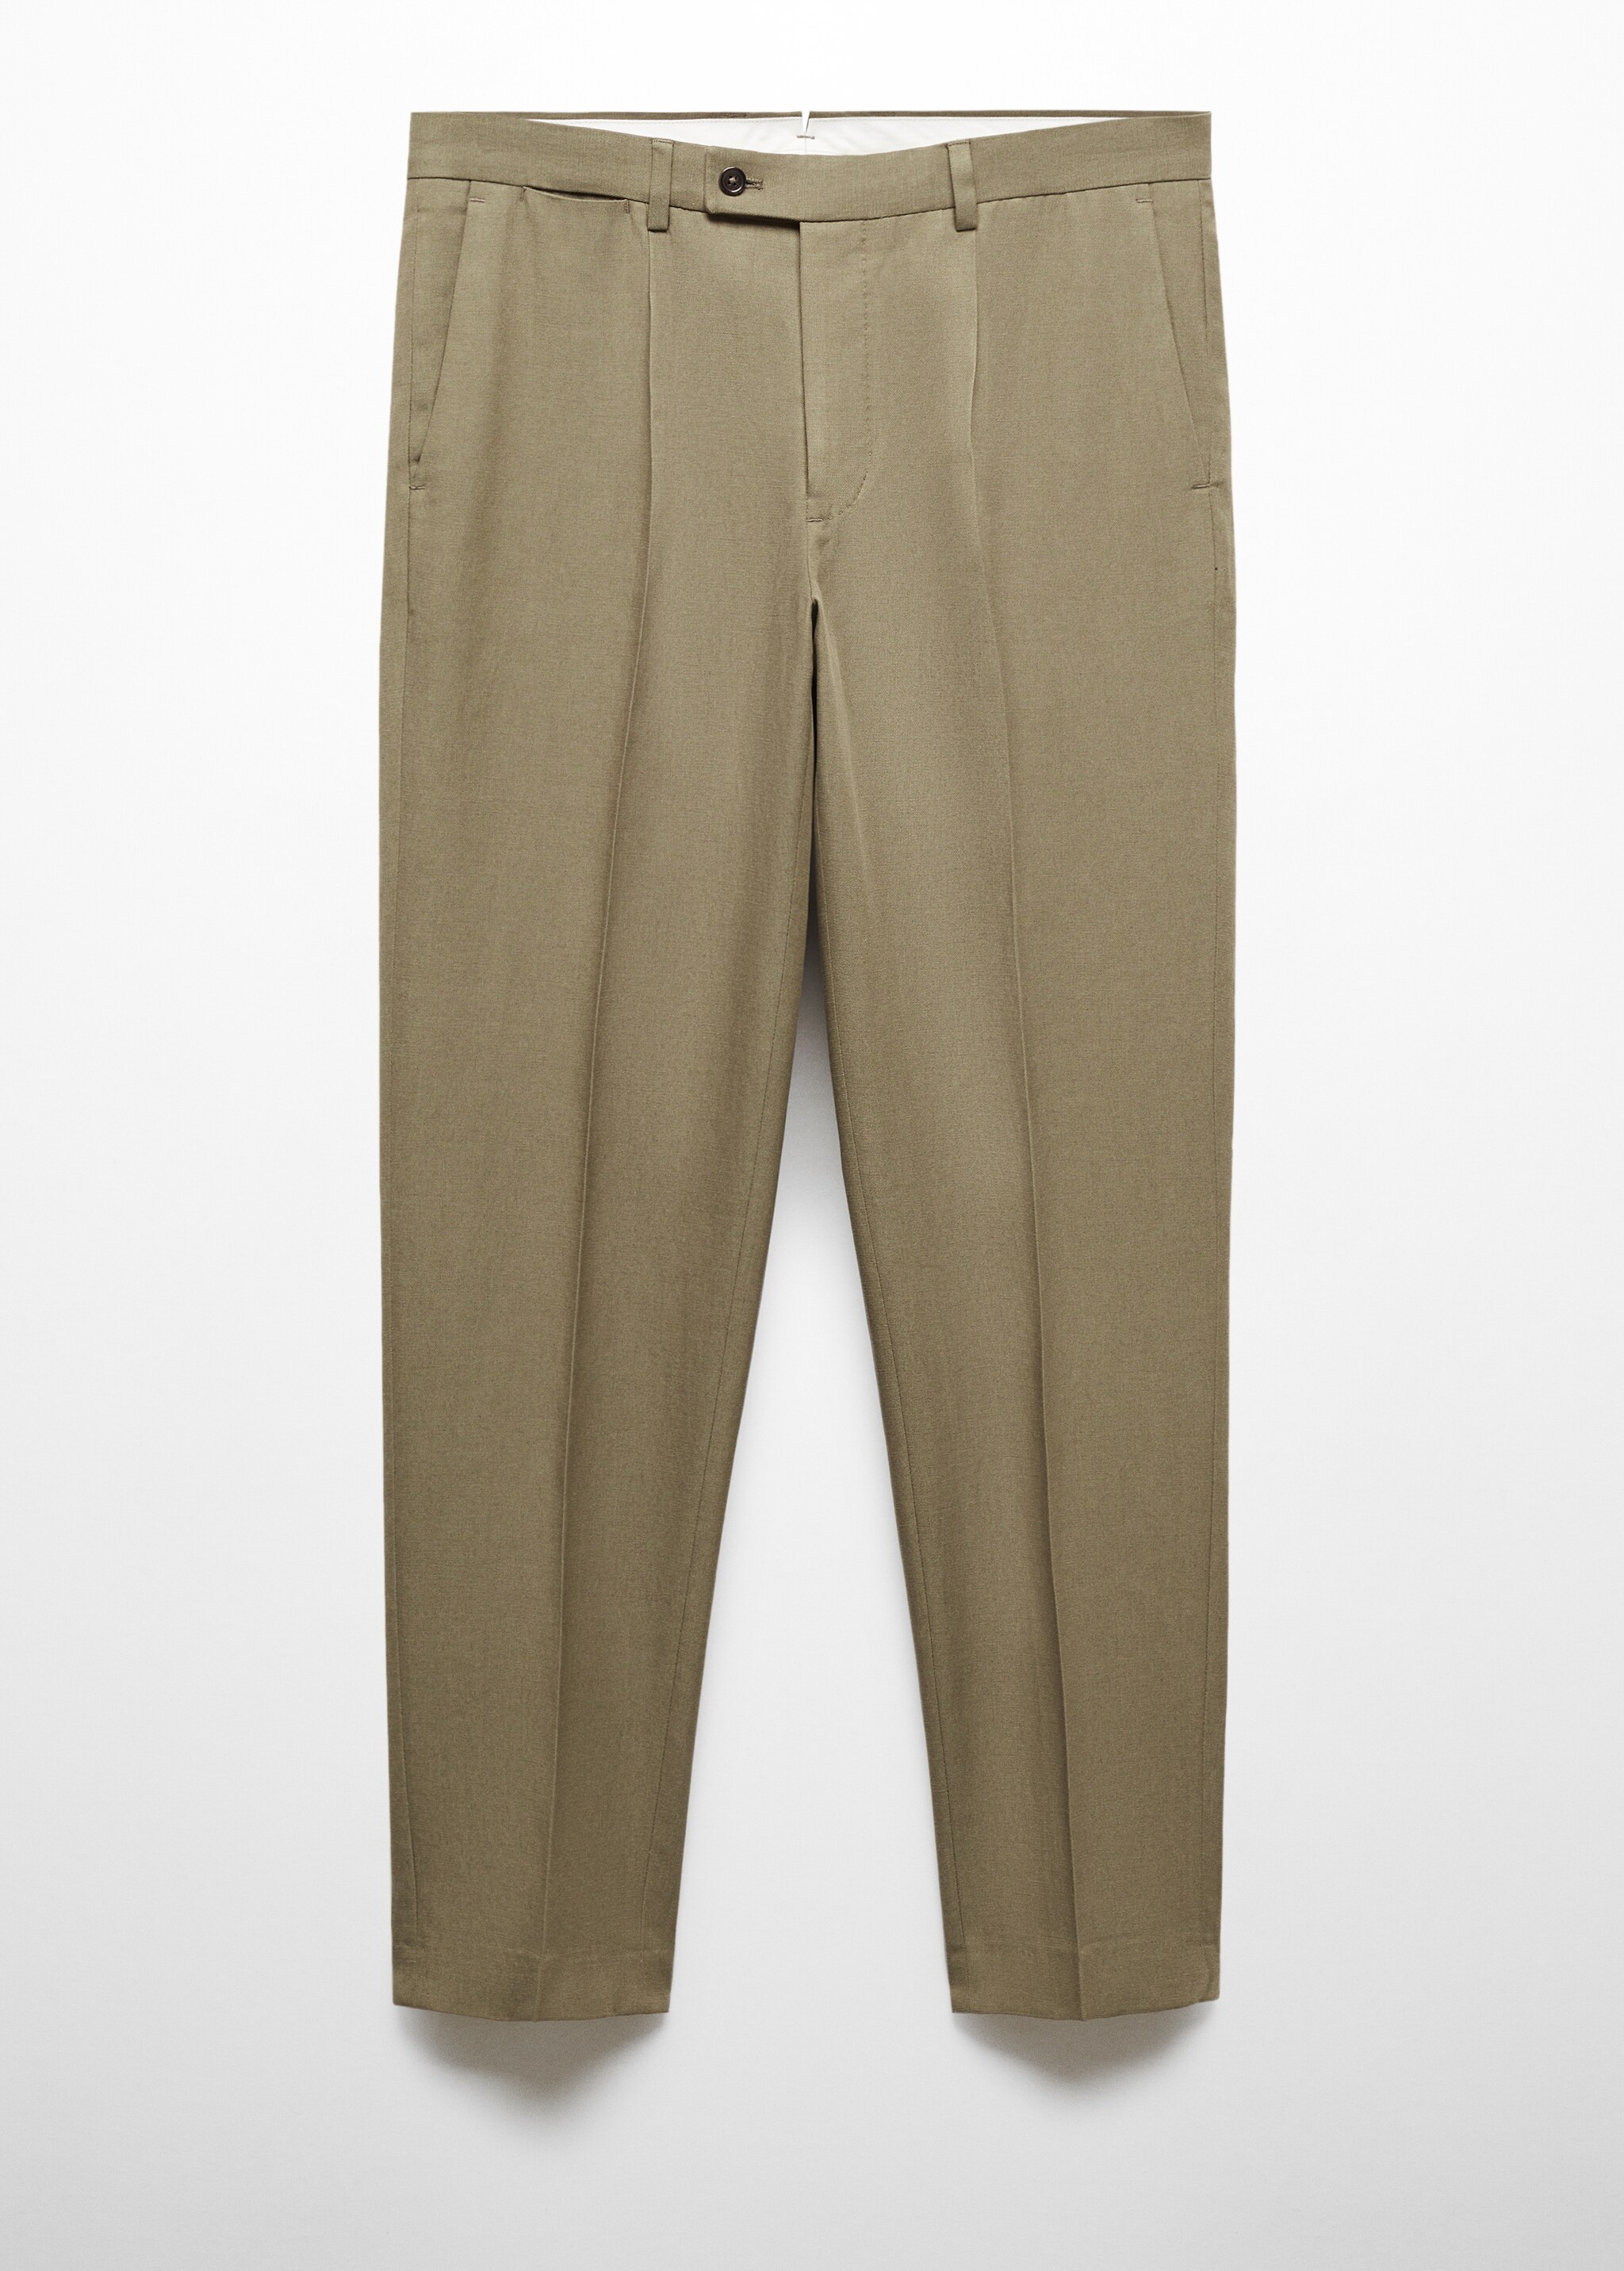 Костюмные брюки slim fit с защипами - Изделие без модели